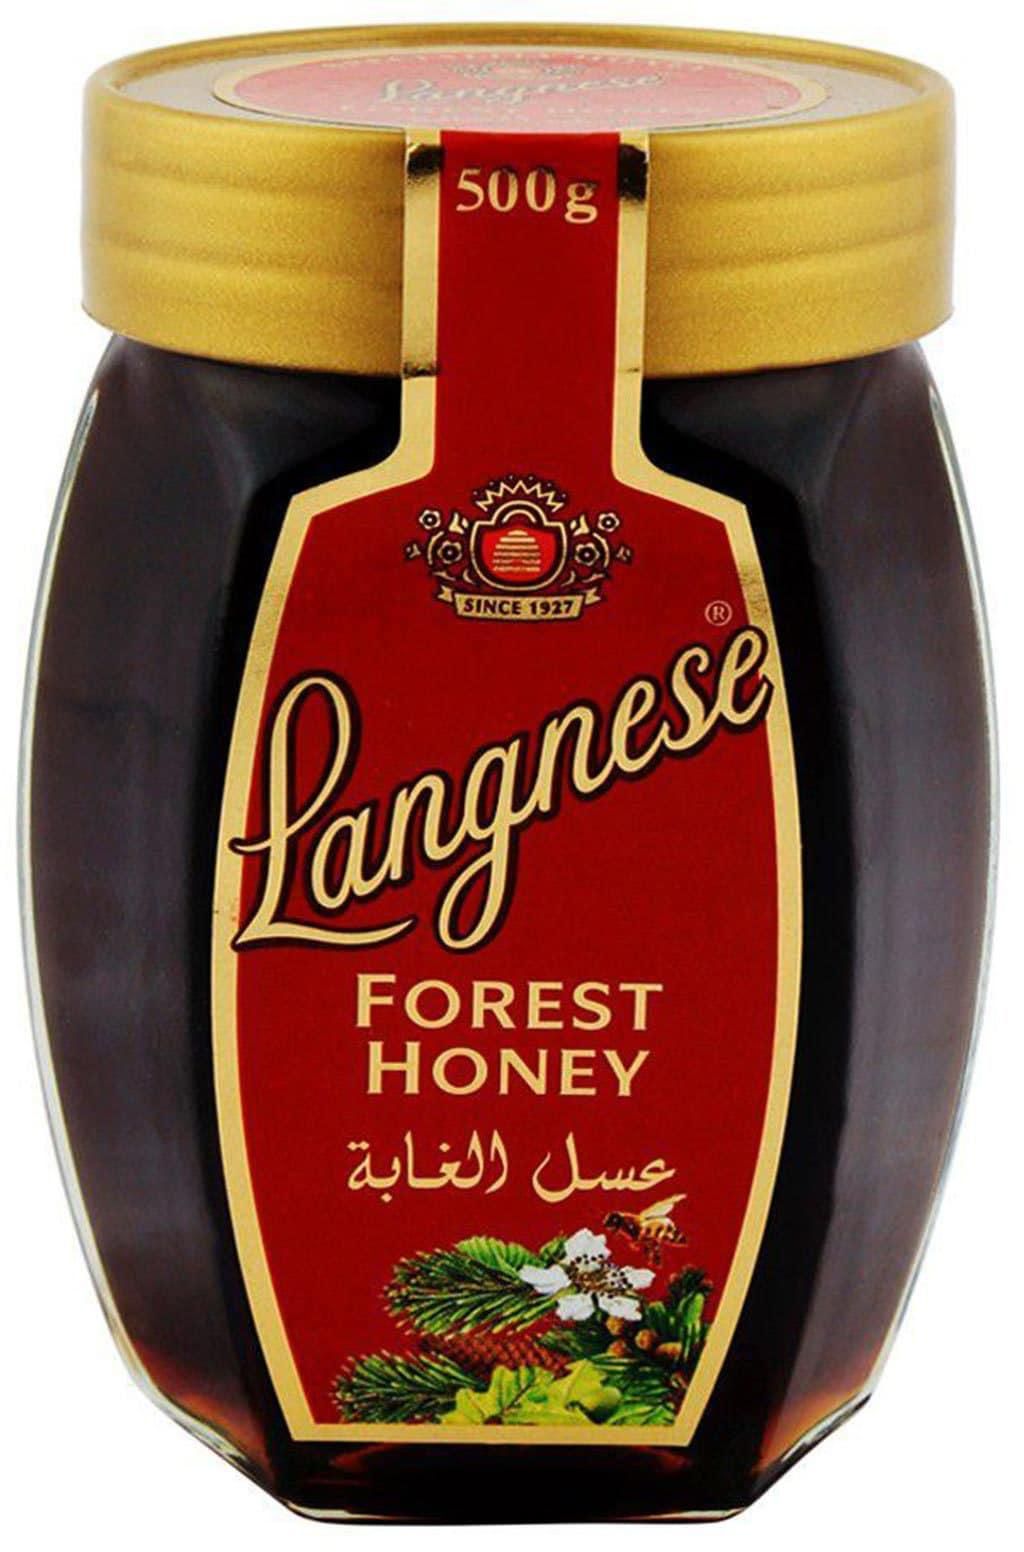 Langnese forest honey 500 g